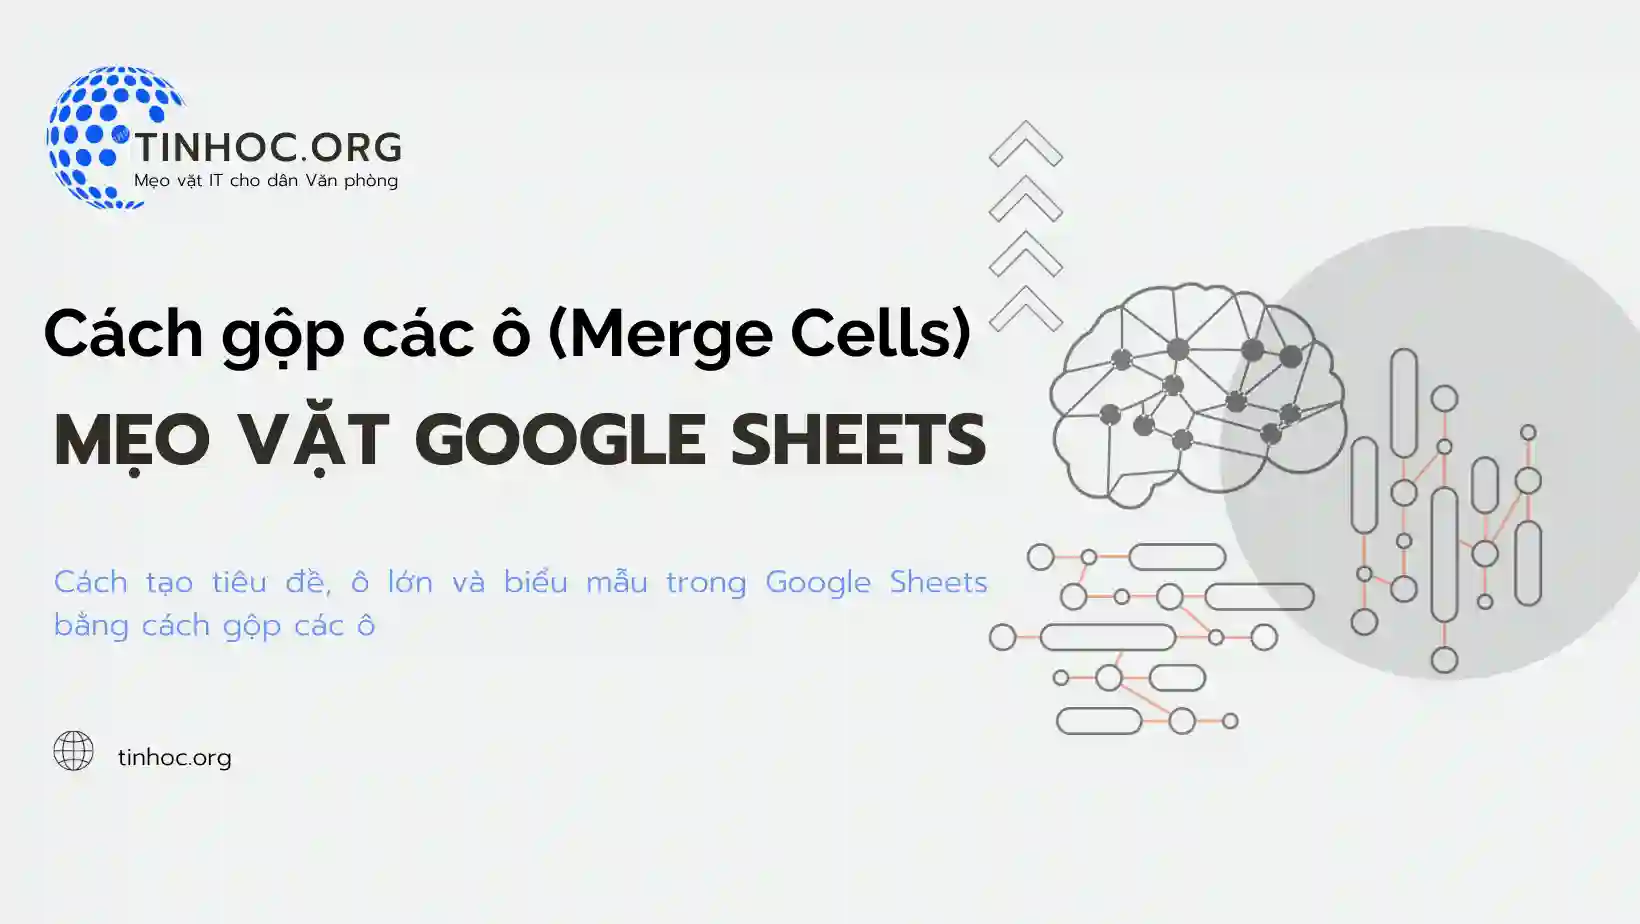 Bạn có biết rằng chỉ với một vài bước đơn giản, bạn có thể gộp hai hoặc nhiều ô thành một ô duy nhất trong Google Sheets?